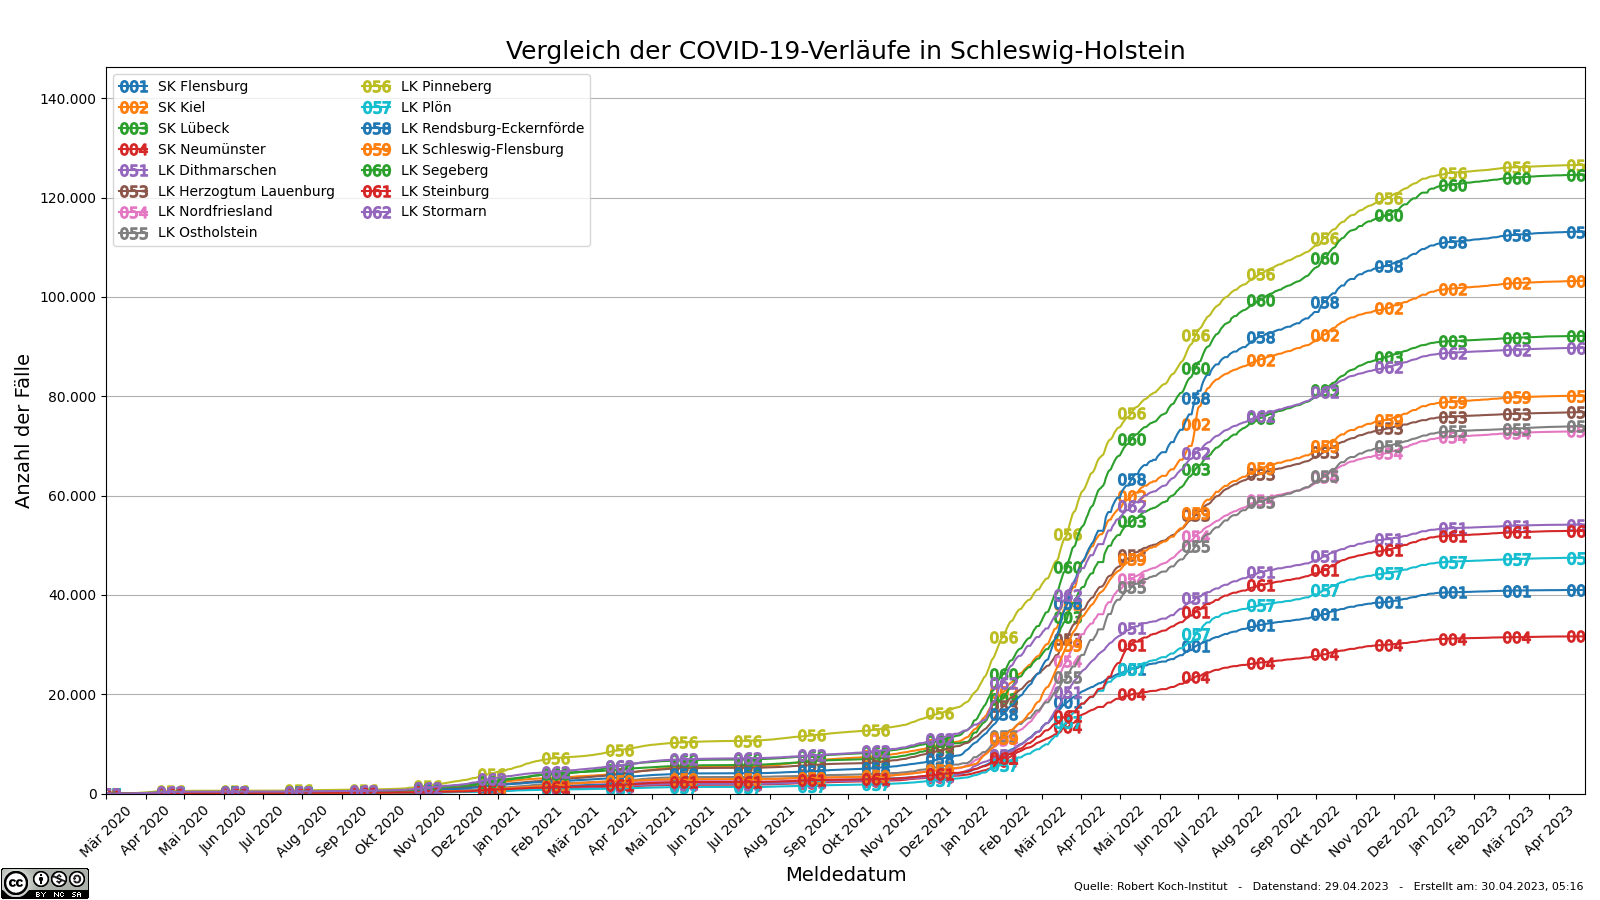 Vergleich der SARS-CoV-2-Infektionen in Schleswig-Holstein (zeitlicher Verlauf)